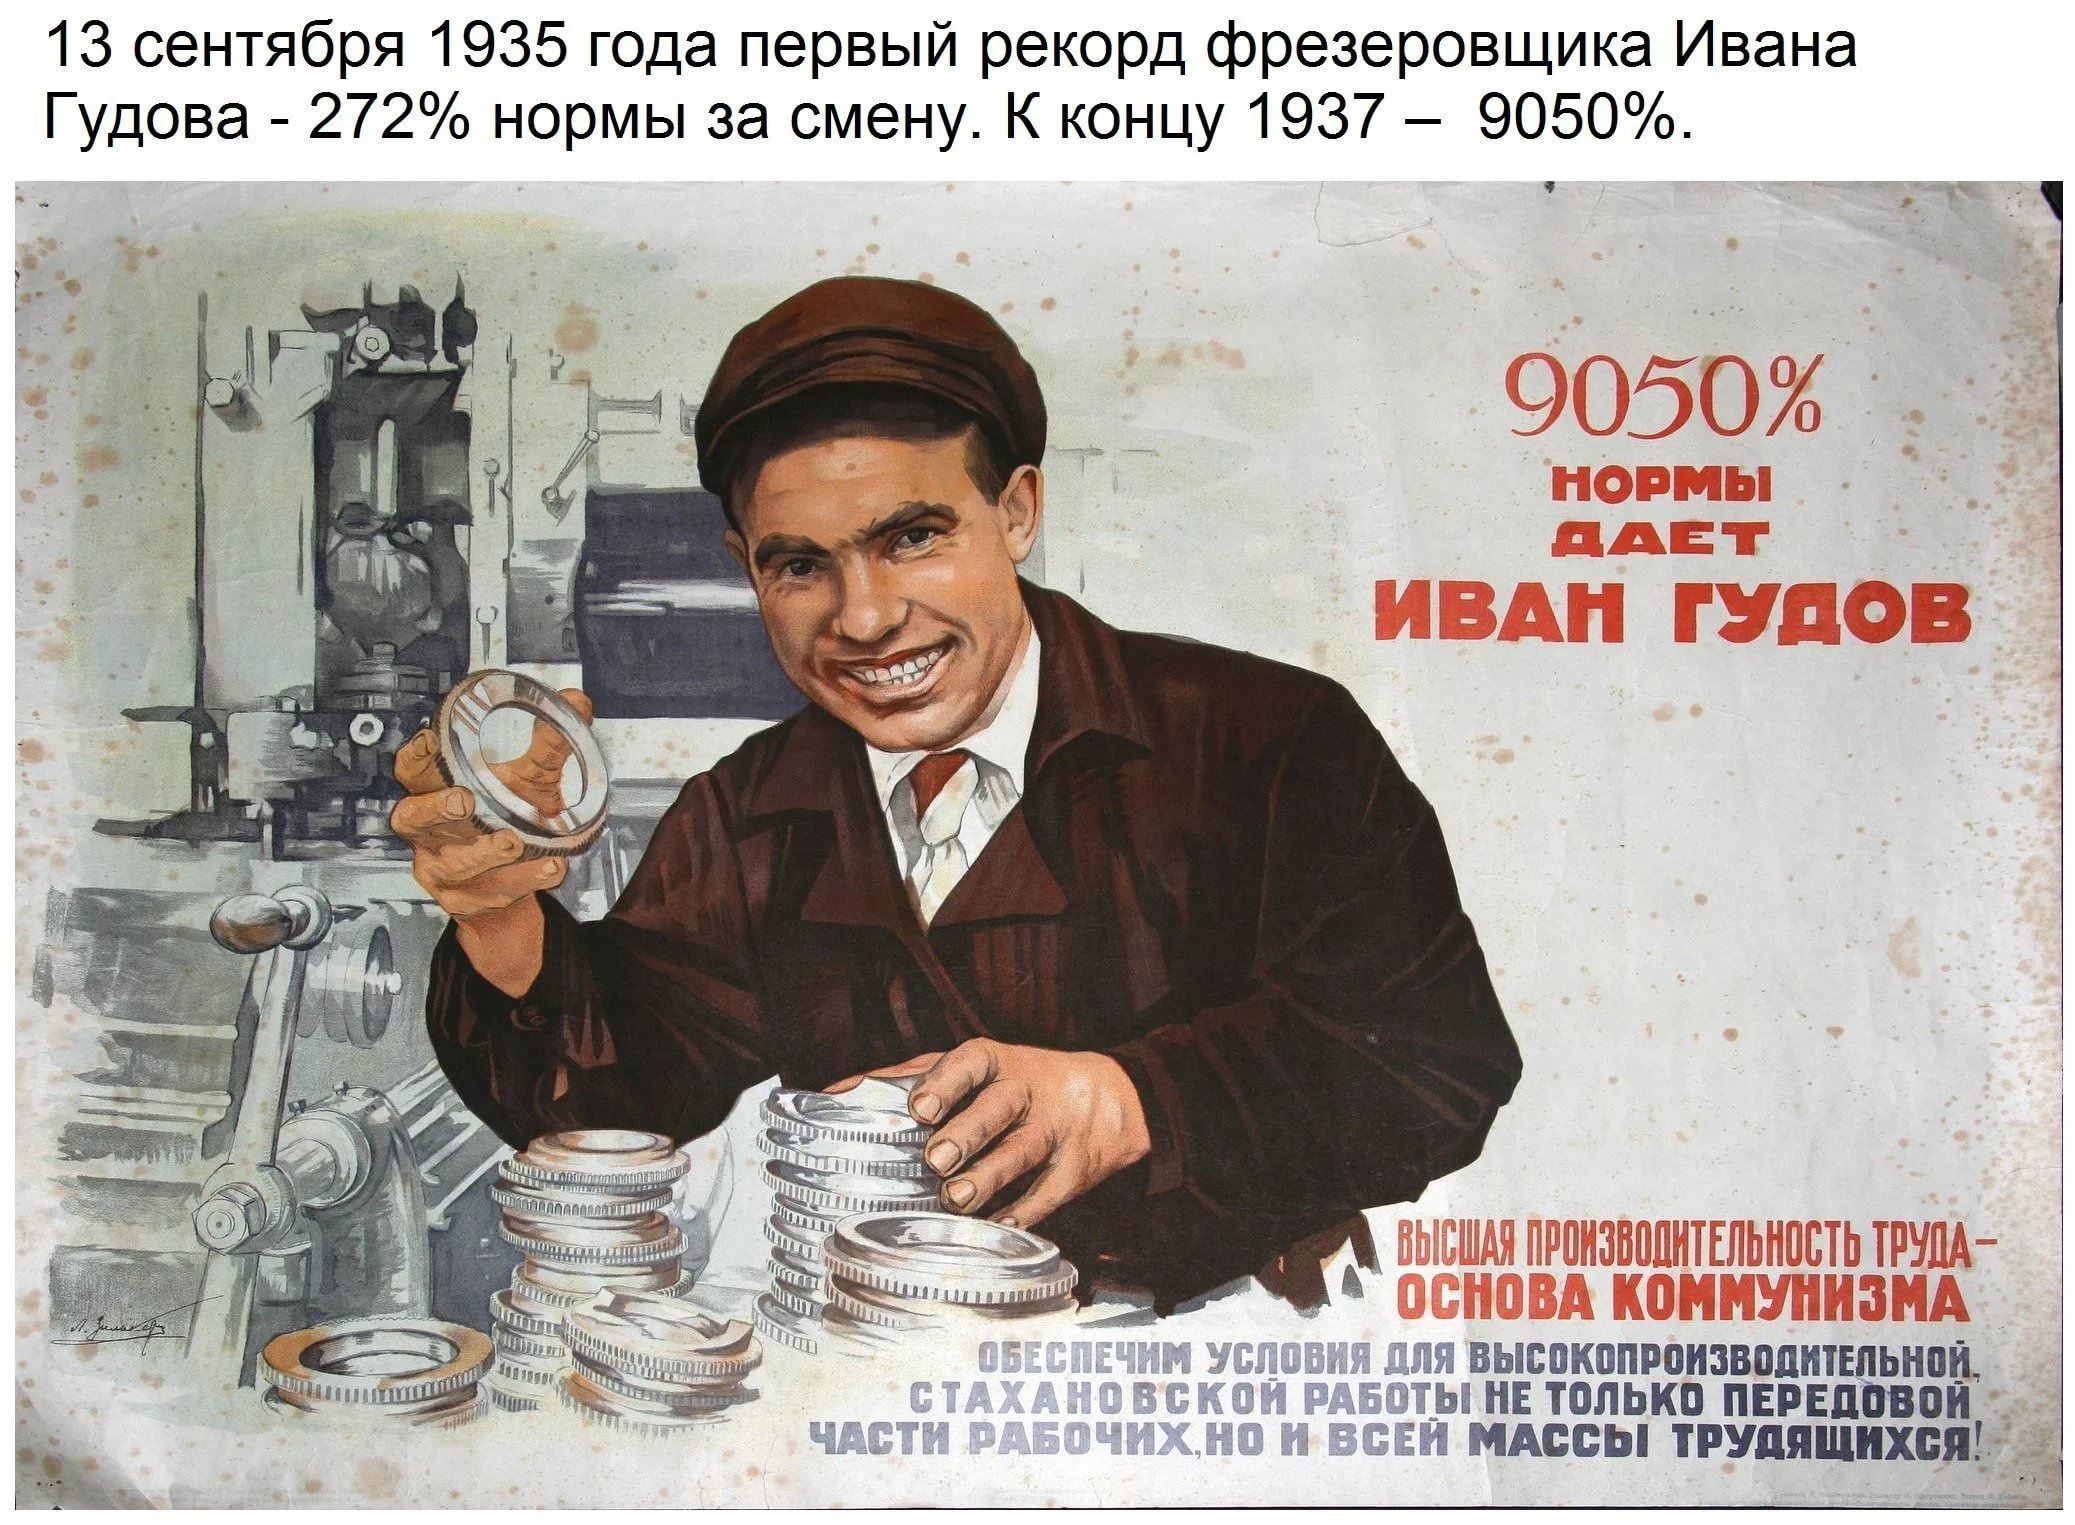 Сделать агитацию. Советские плакаты. Старые советские плакаты. Агитационные плакаты. Советские агитационные плакаты.